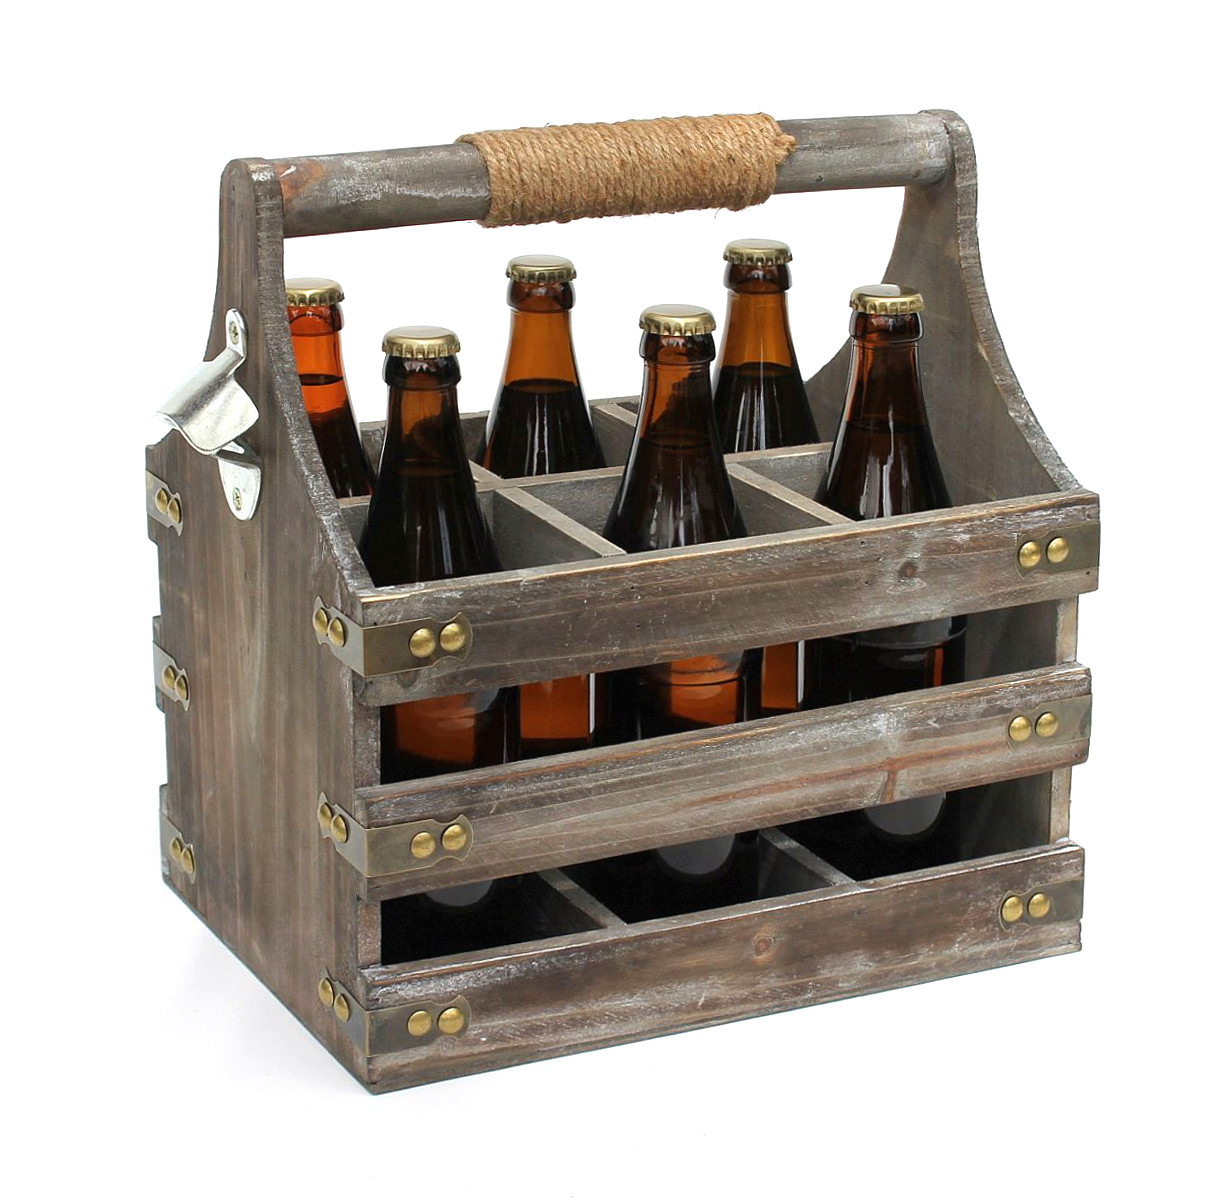 Männergeschenke-DanDiBo DanDiBo mit Holz Flaschenträger Öffner Männerhandtasche Flaschenkorb Bierträger aus Flaschenöffner 93860